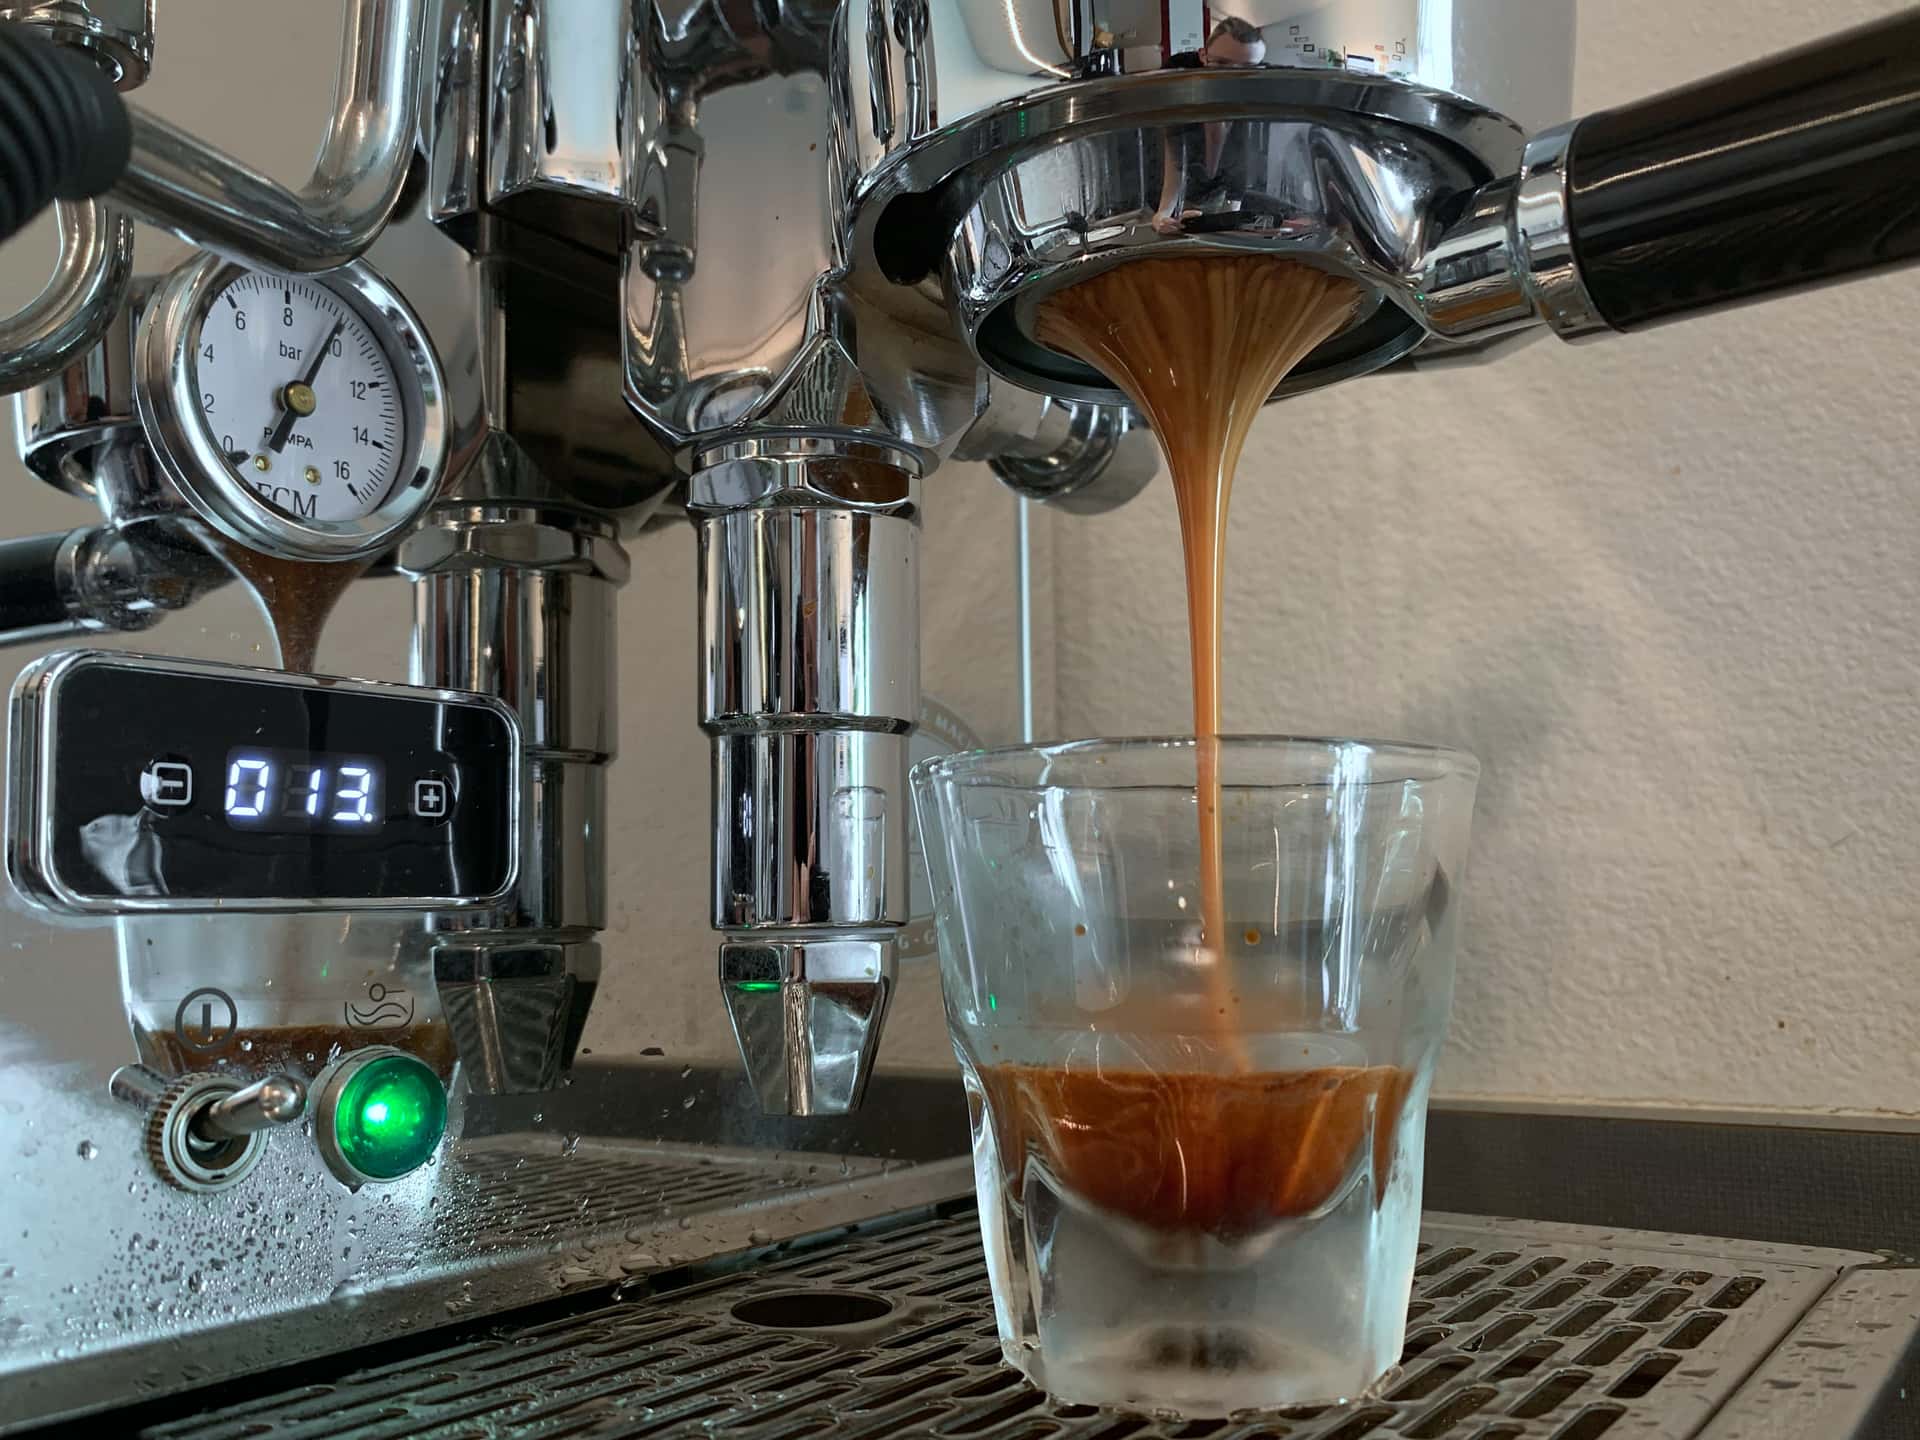 espresso shot extraction from a bottomless portafilter into a gibraltar